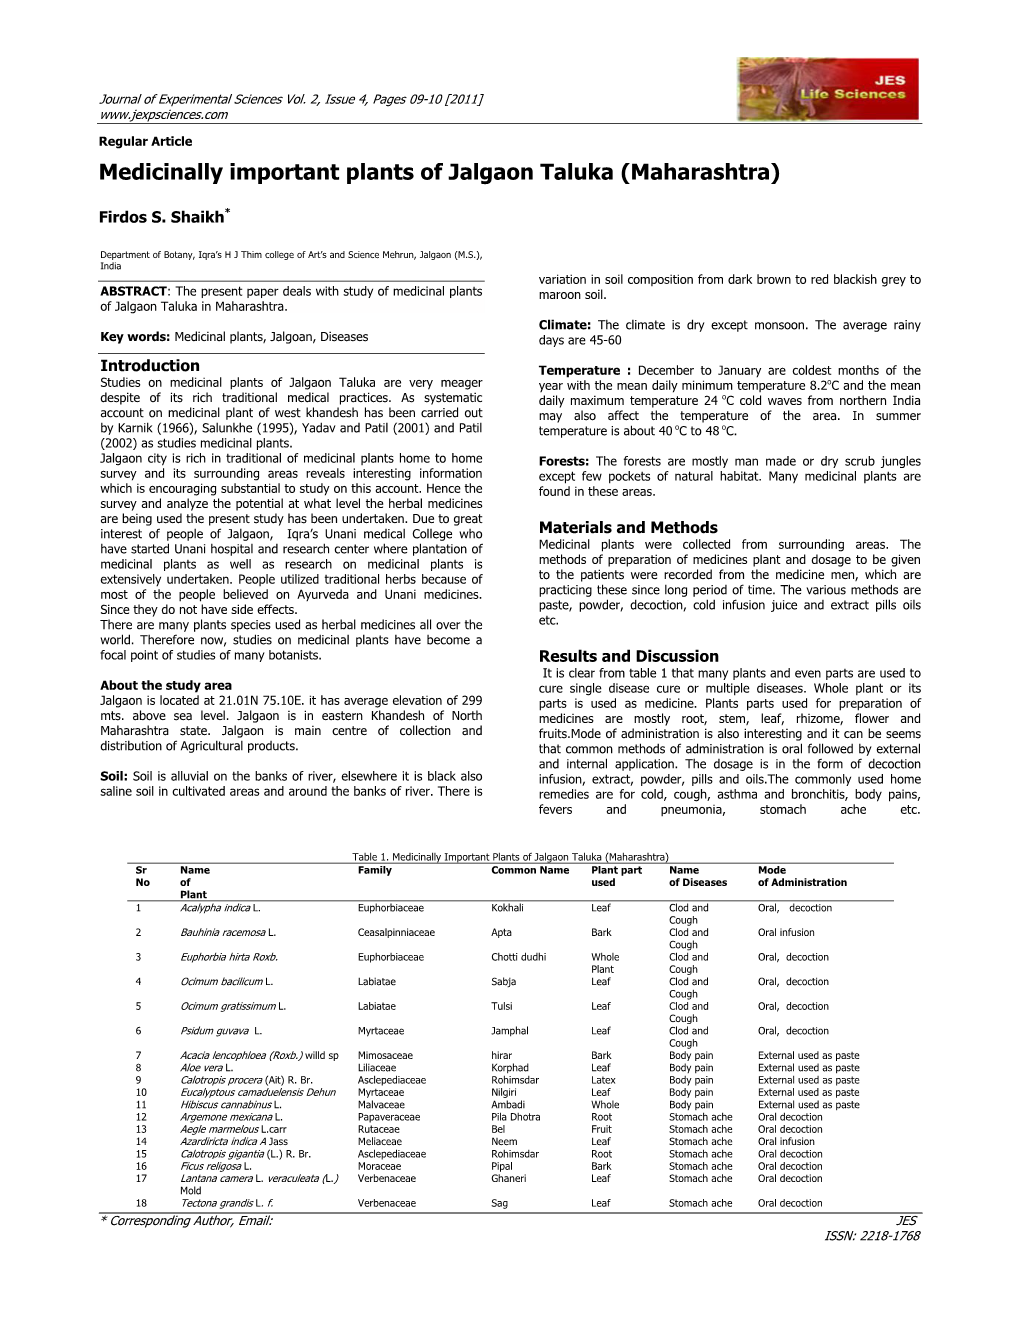 Medicinally Important Plants of Jalgaon Taluka (Maharashtra)